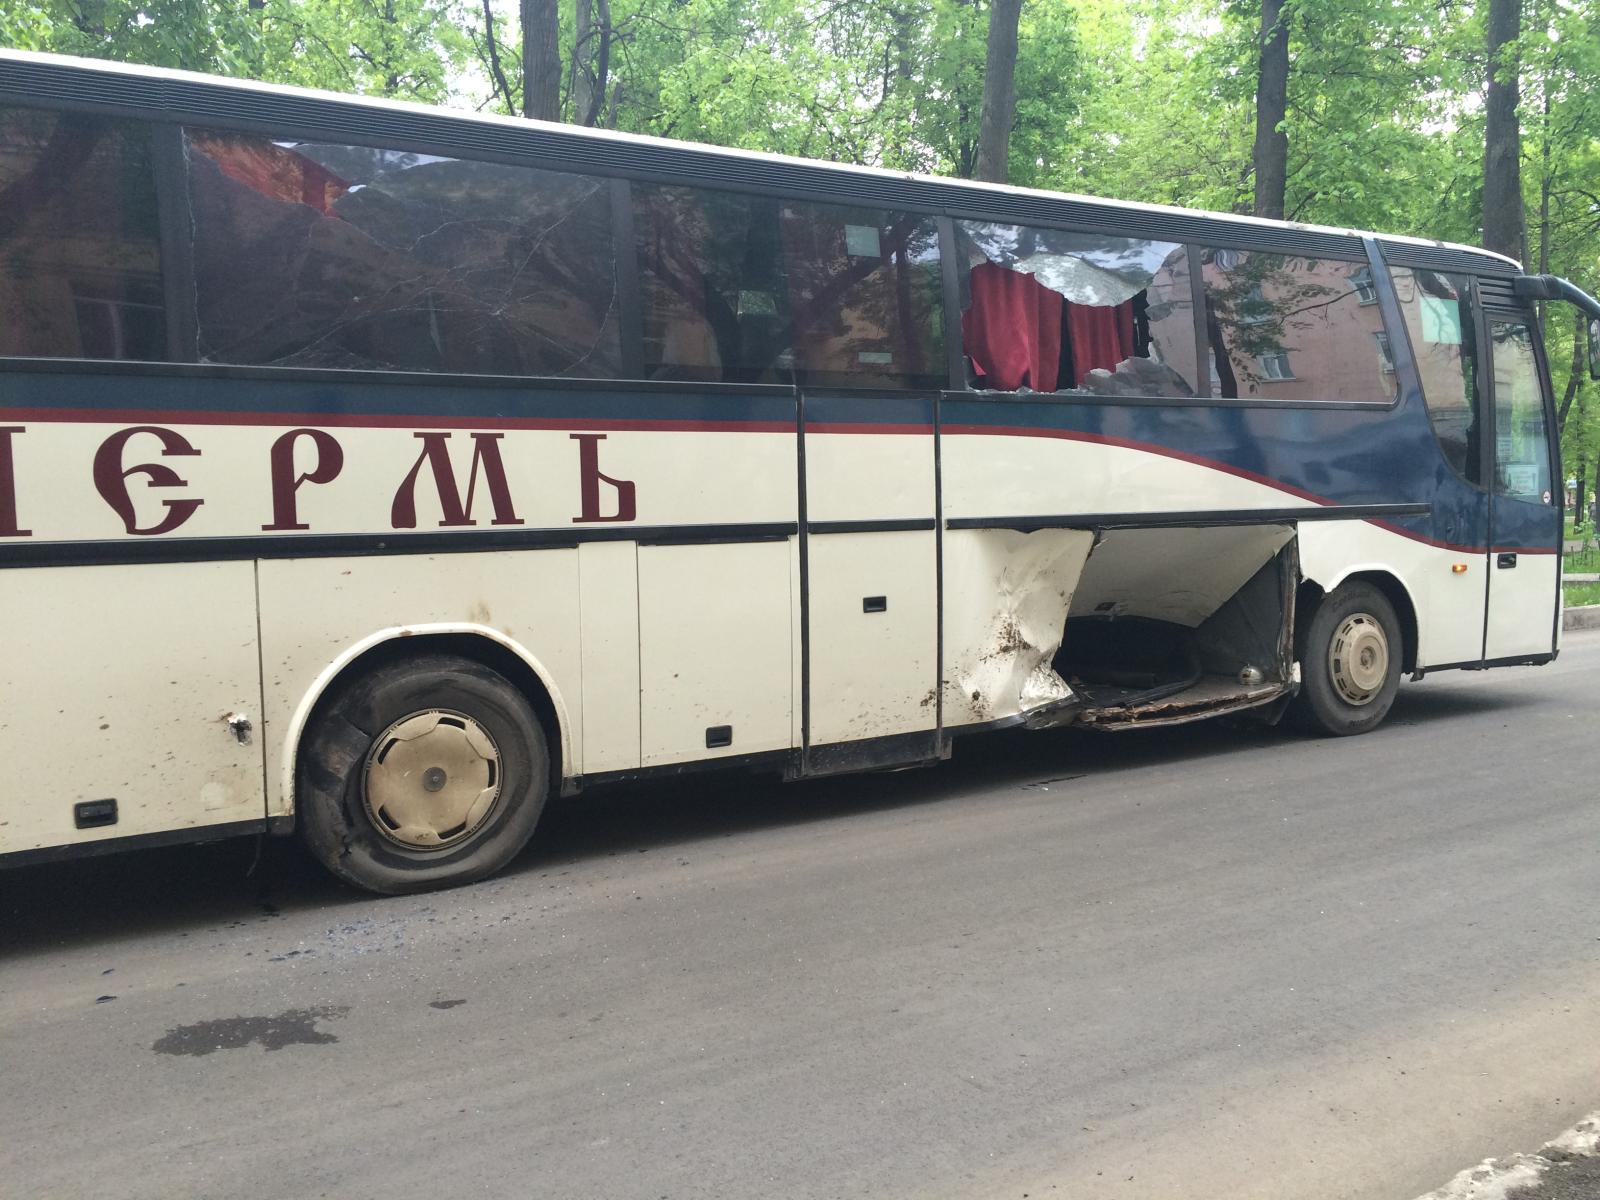 В Перми в День города пьяный водитель УАЗа протаранил автобус